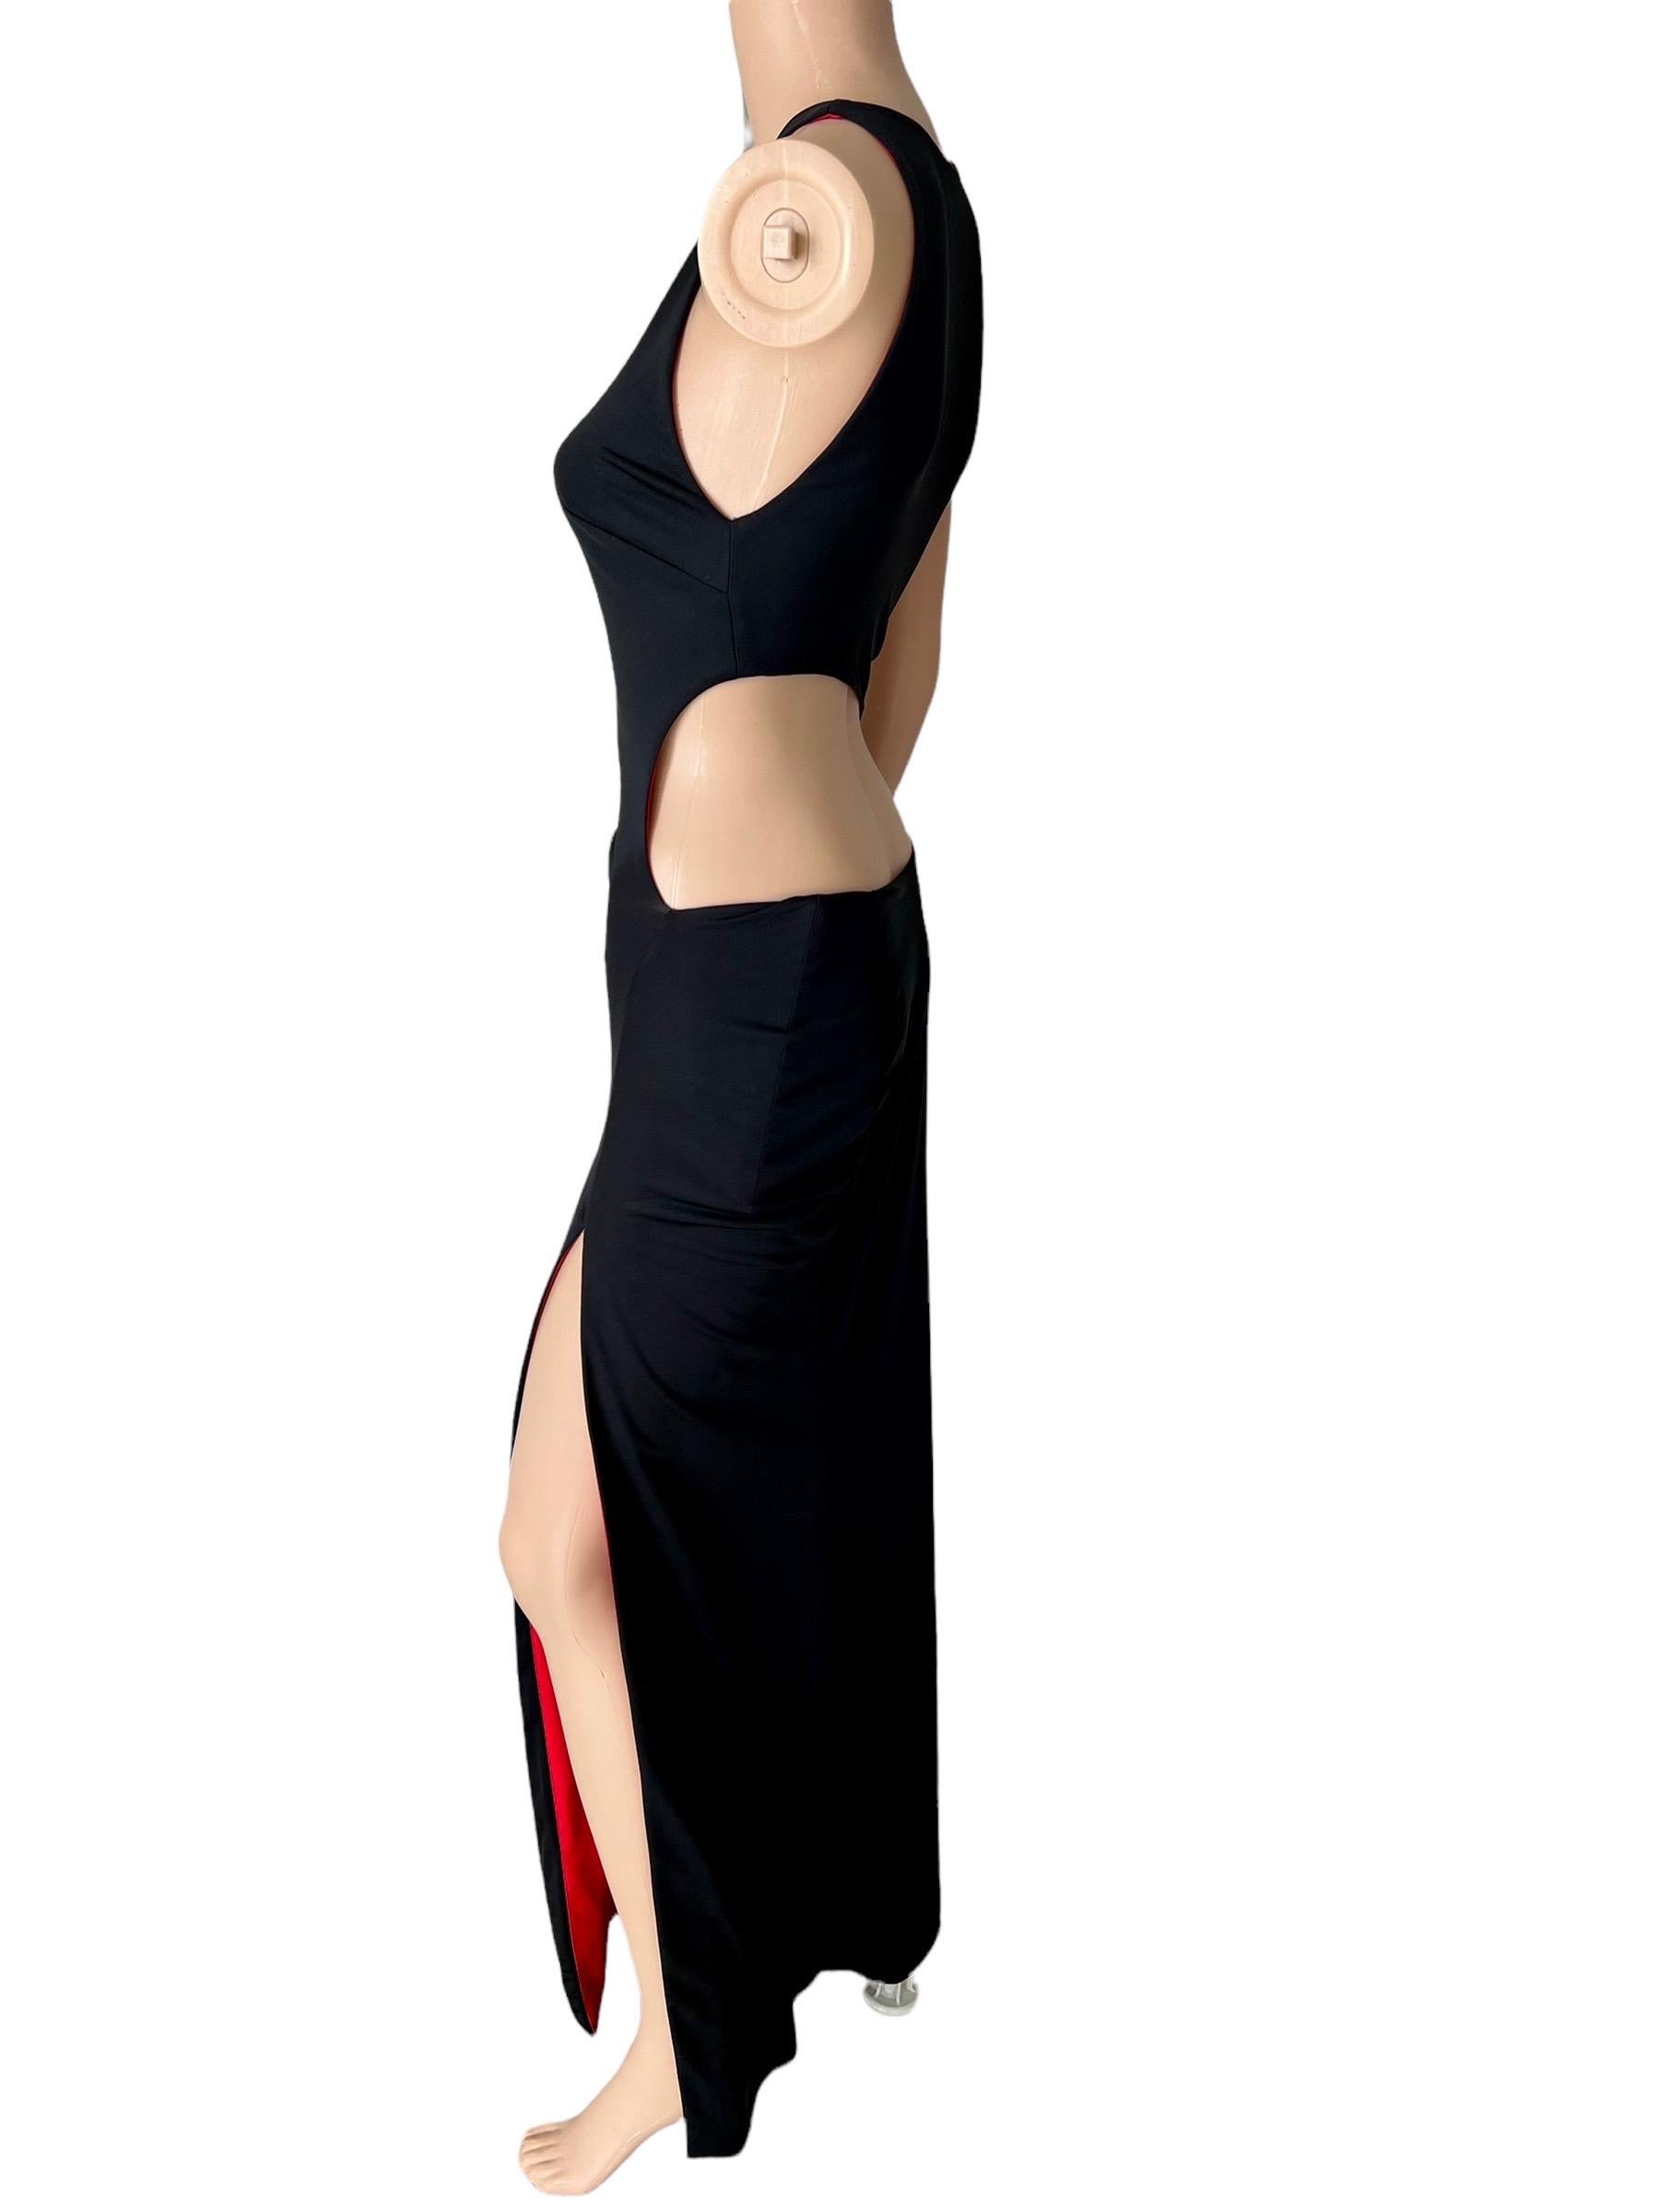 Gianni Versace S/S 1998 Runway Vintage Wet Liquid Look Ausschnitt Abendkleid IT 38

Schwarz und rot unterlegtes, trägerloses Abendkleid von Gianni Versace mit hohem Beinschlitz und Bodycon-Silhouette. 
